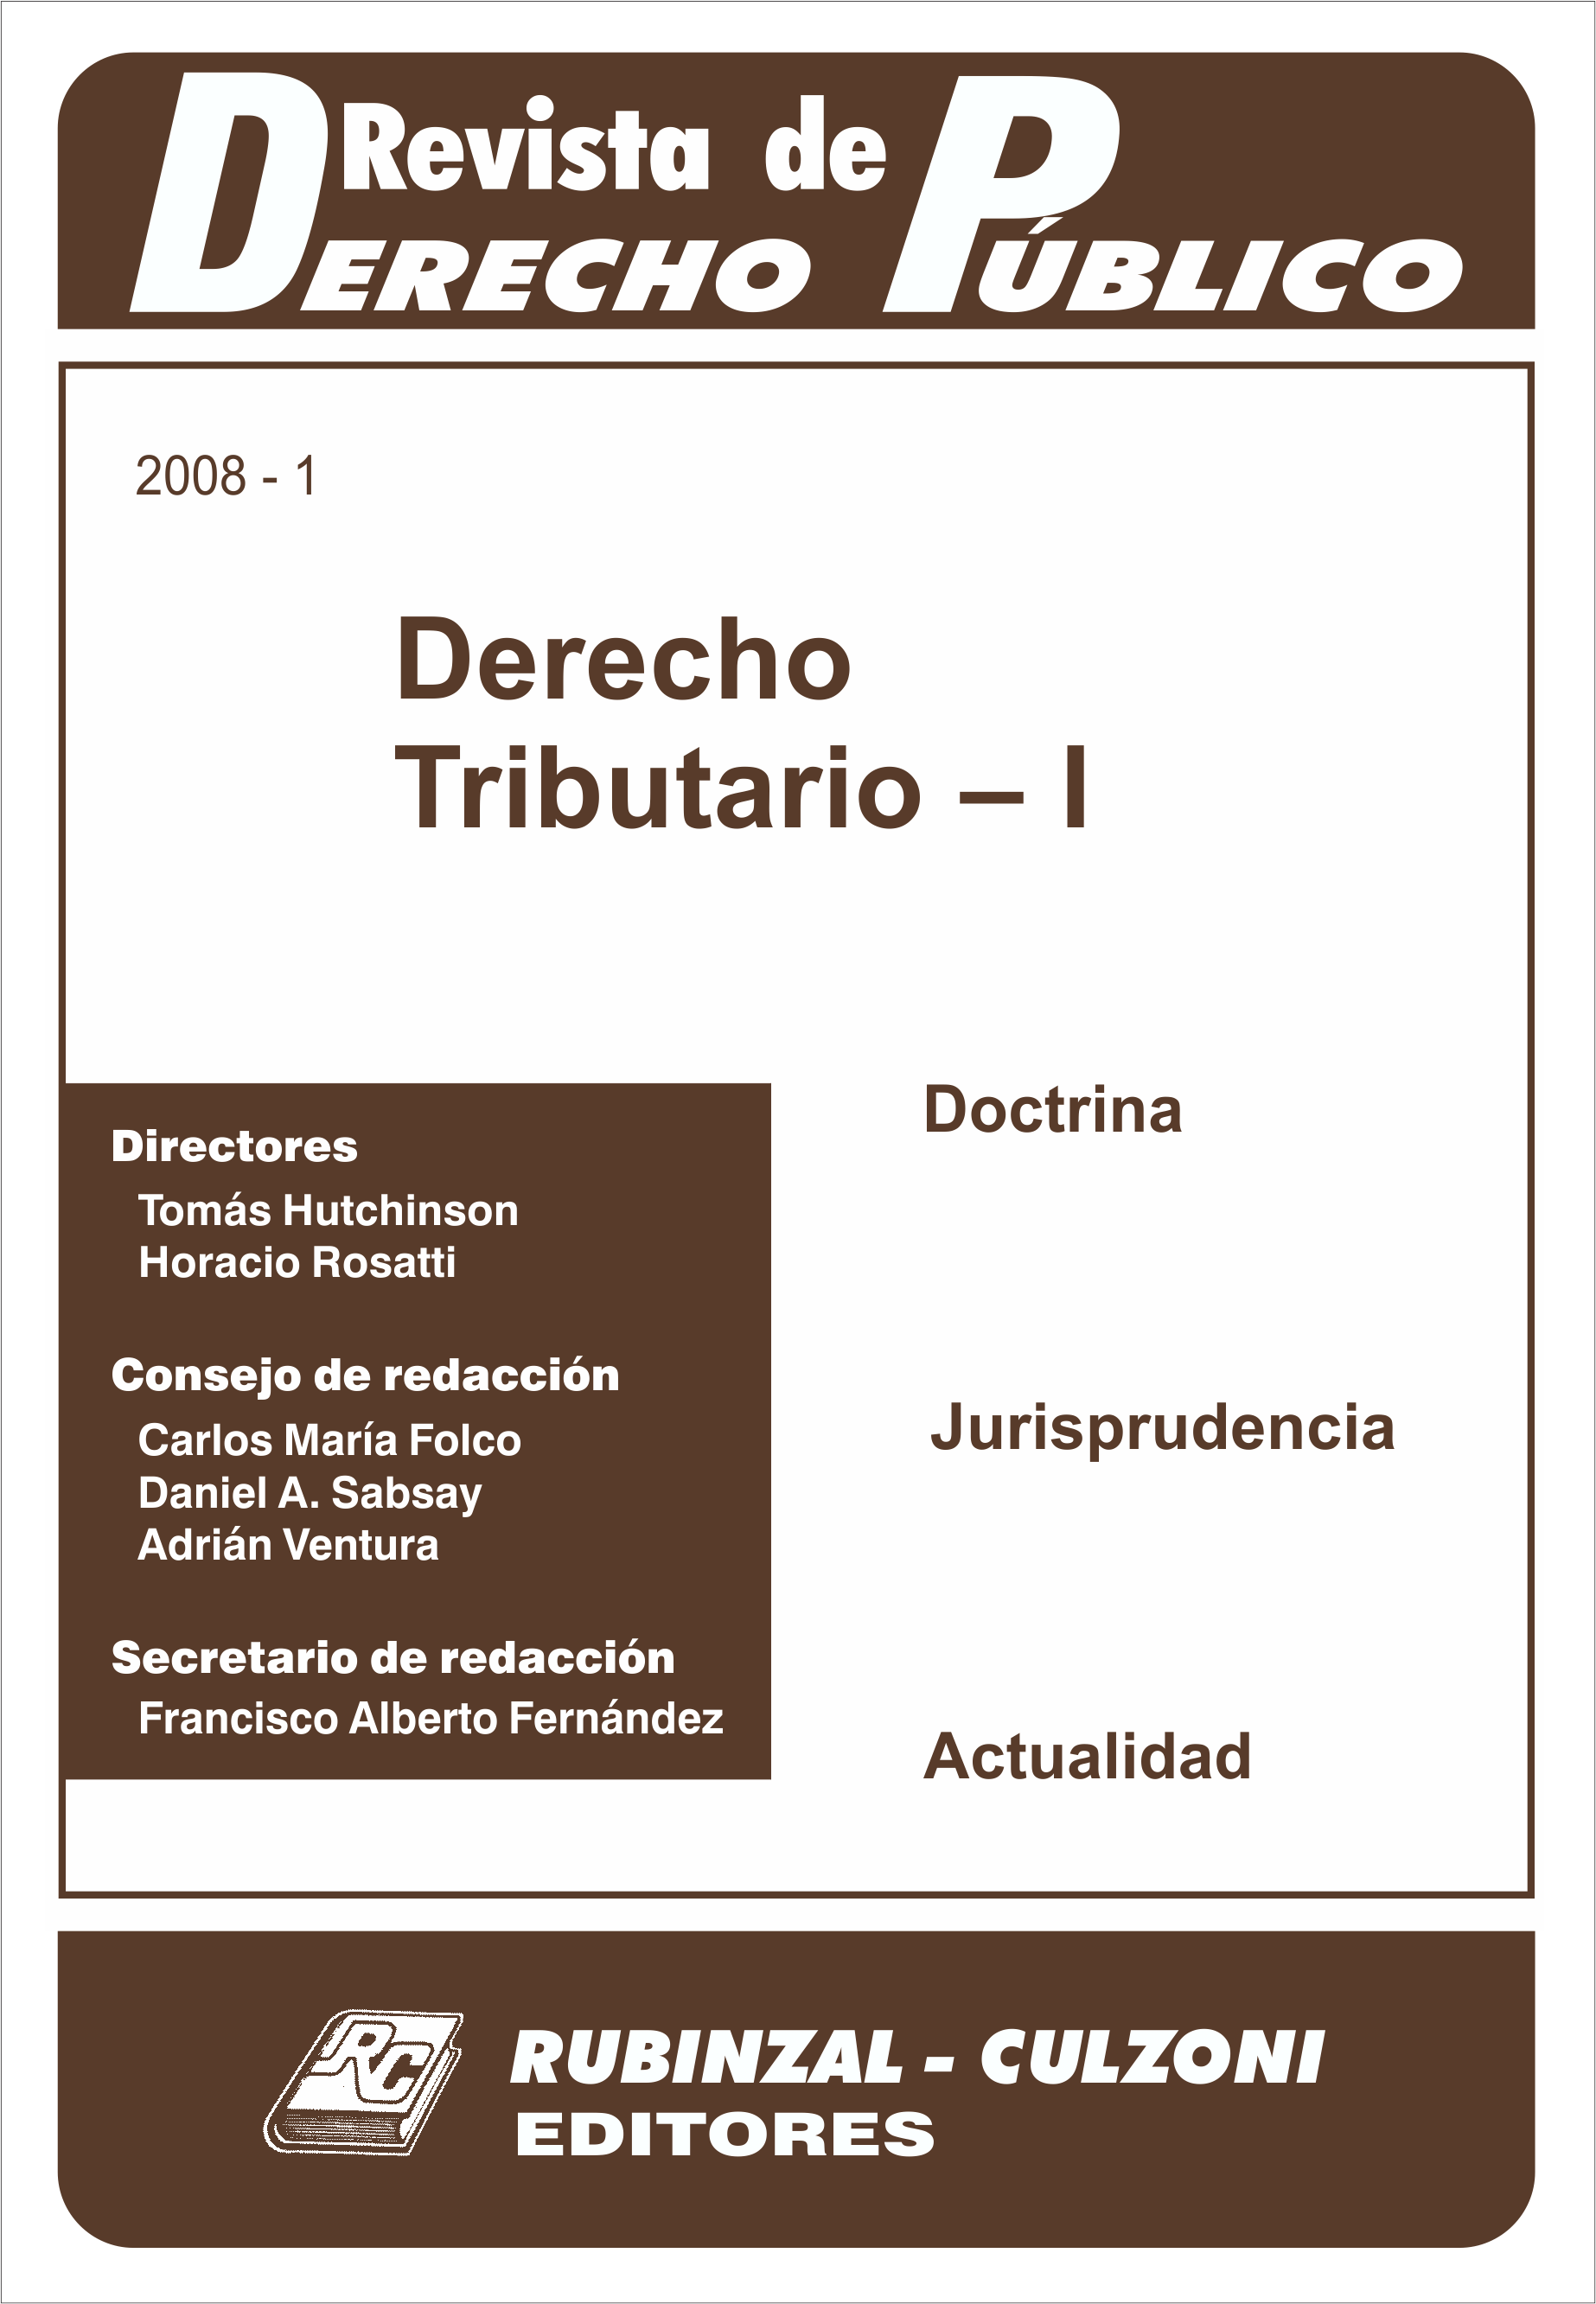 Revista de Derecho Público - Derecho Tributario - I.